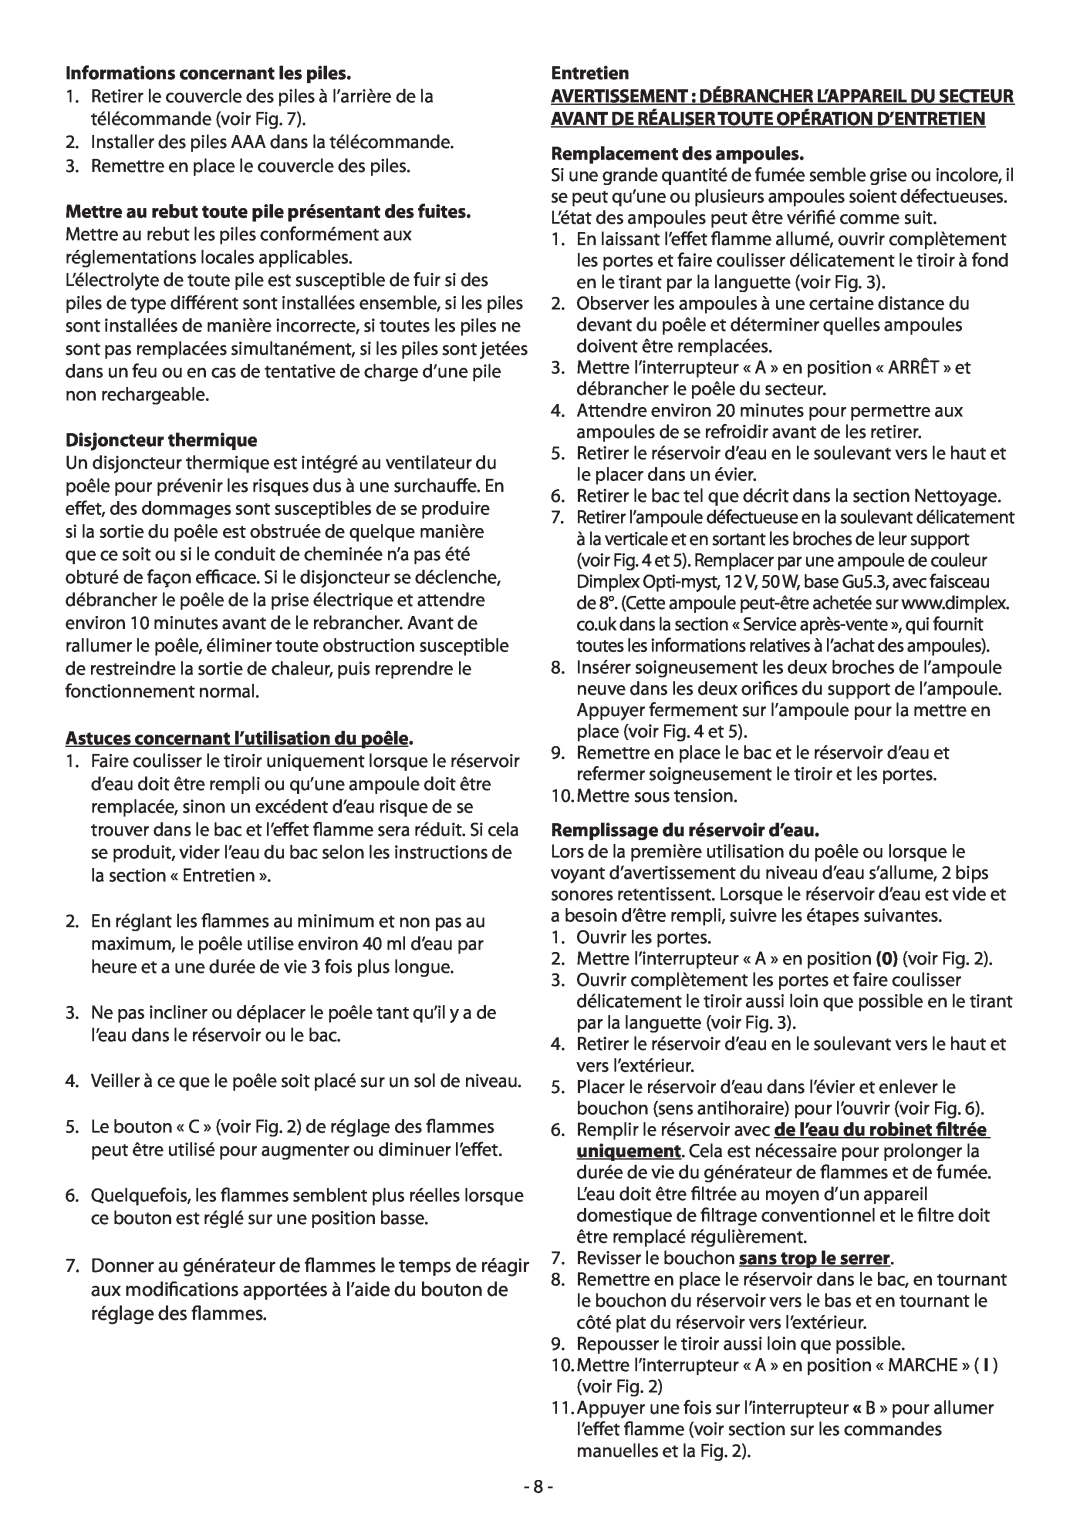 Dimplex CGn20 manual Informations concernant les piles, Disjoncteur thermique, Astuces concernant l’utilisation du poêle 